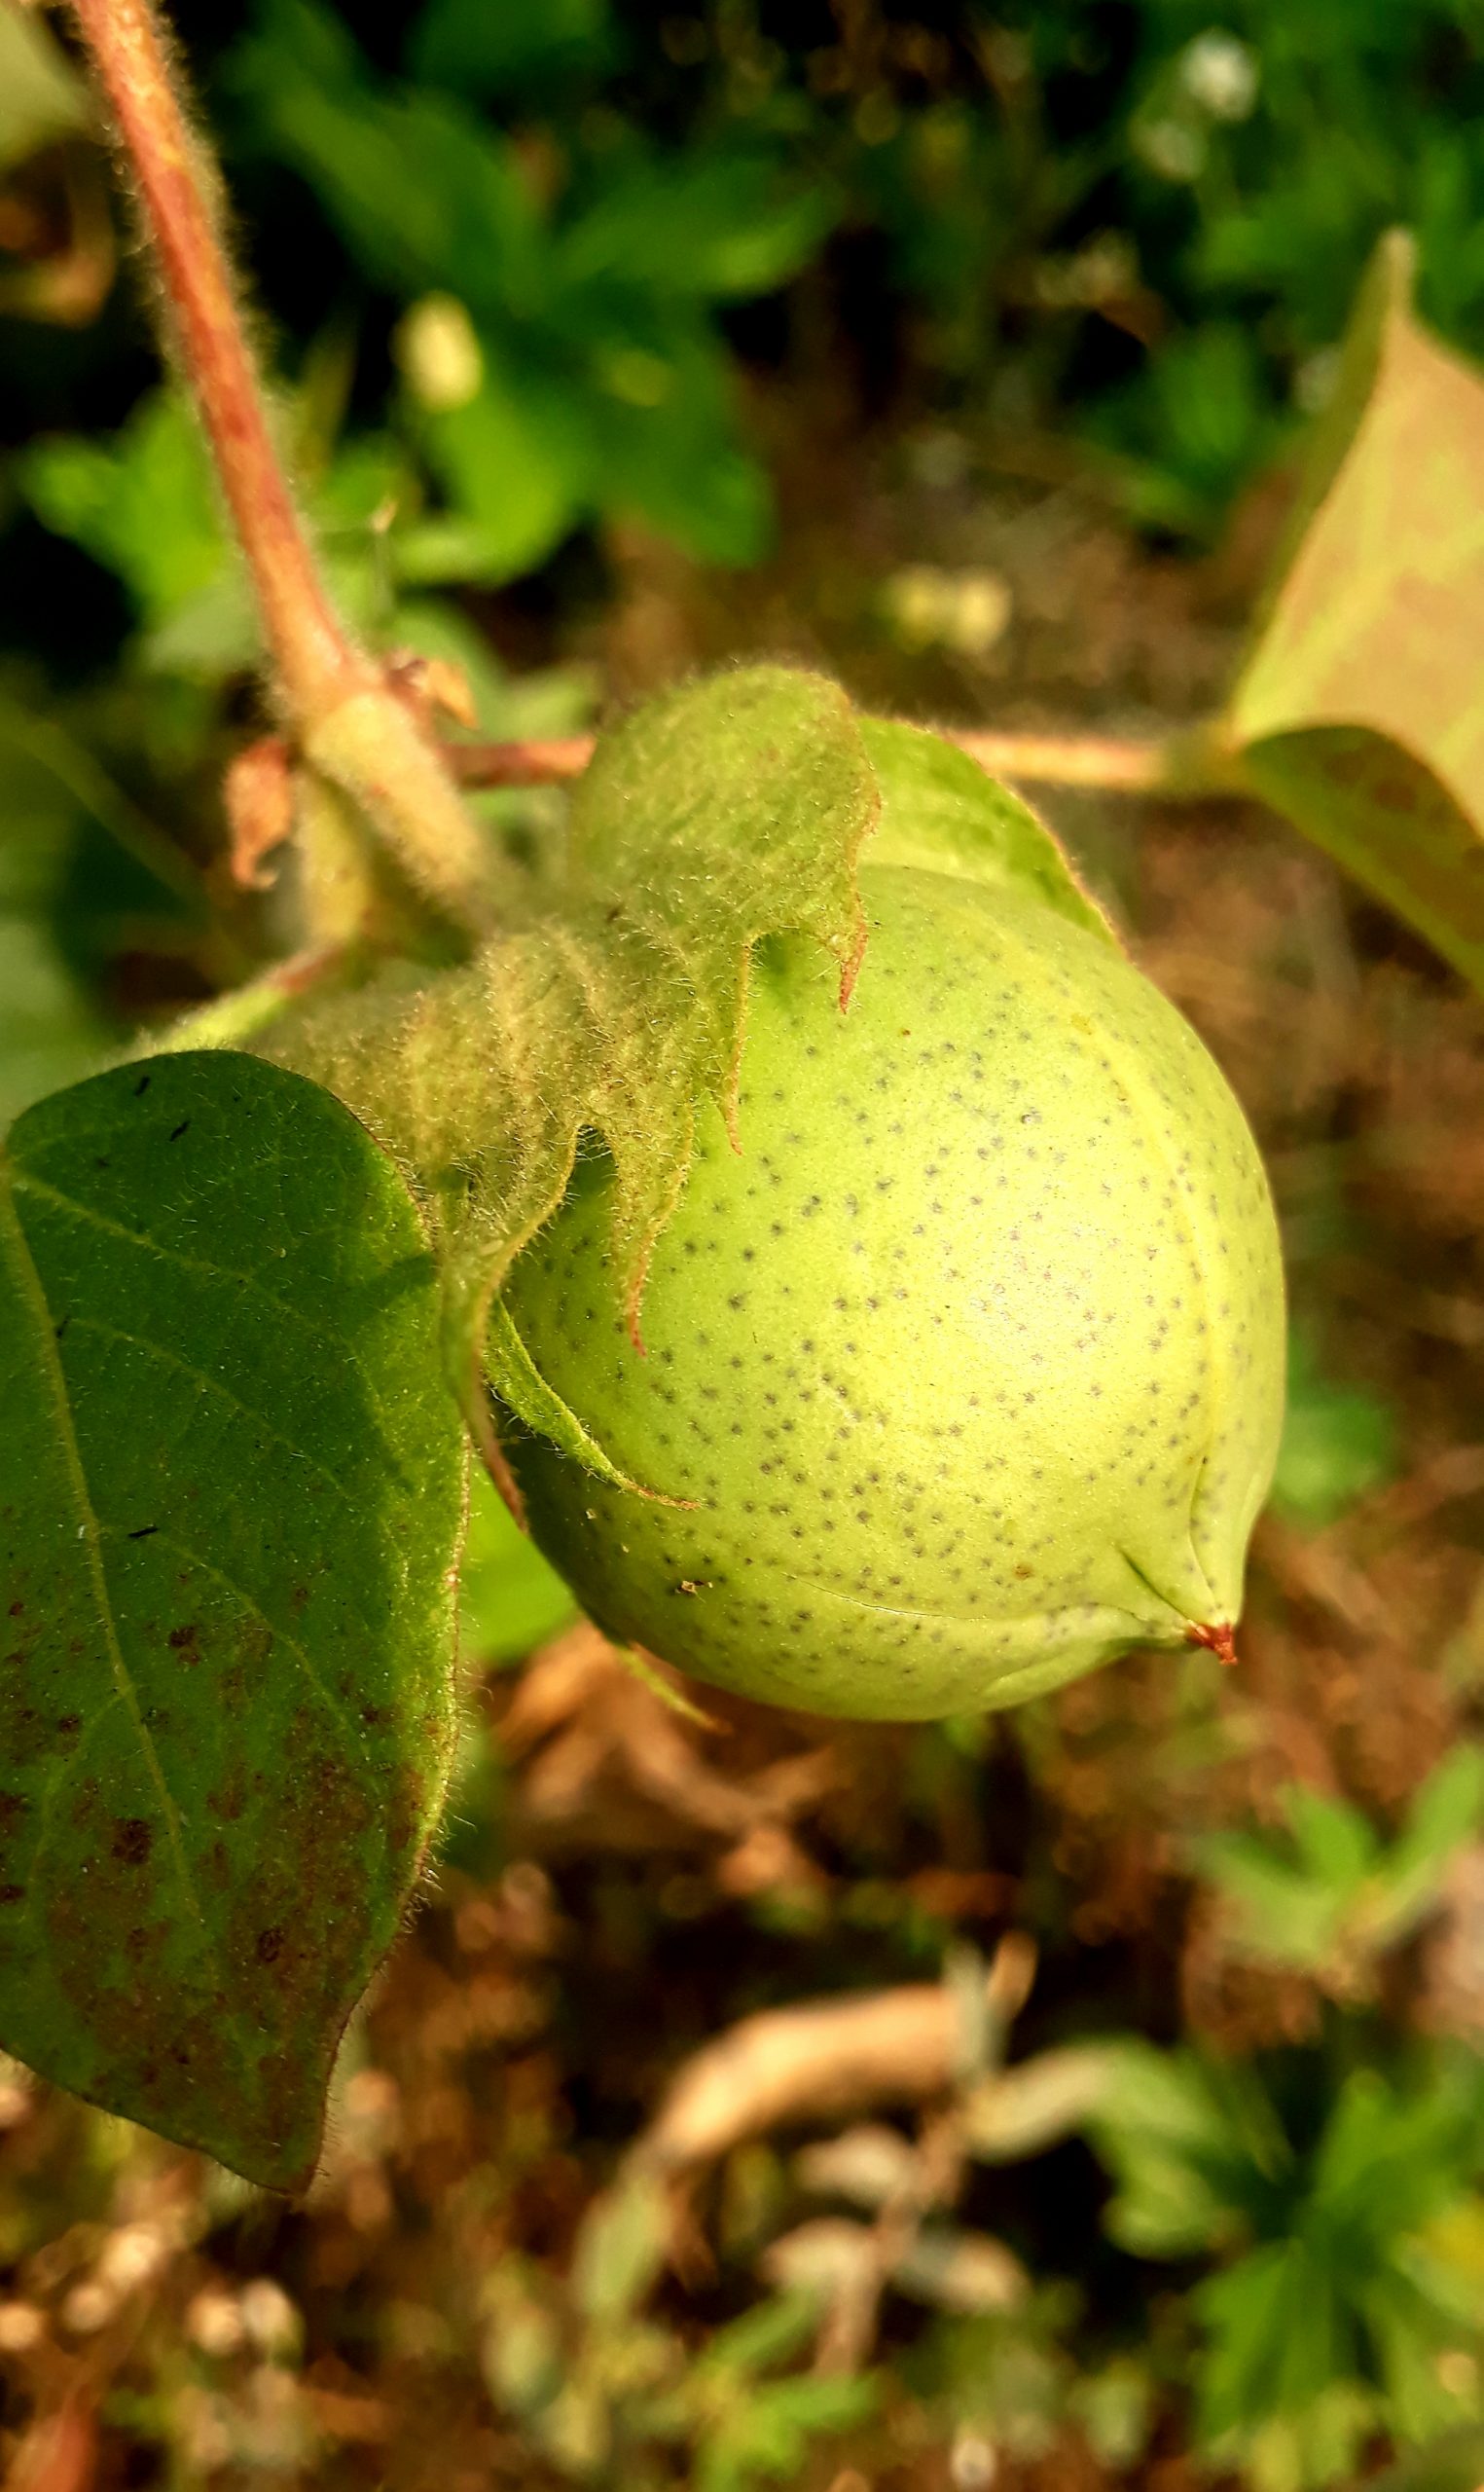 A green fruit